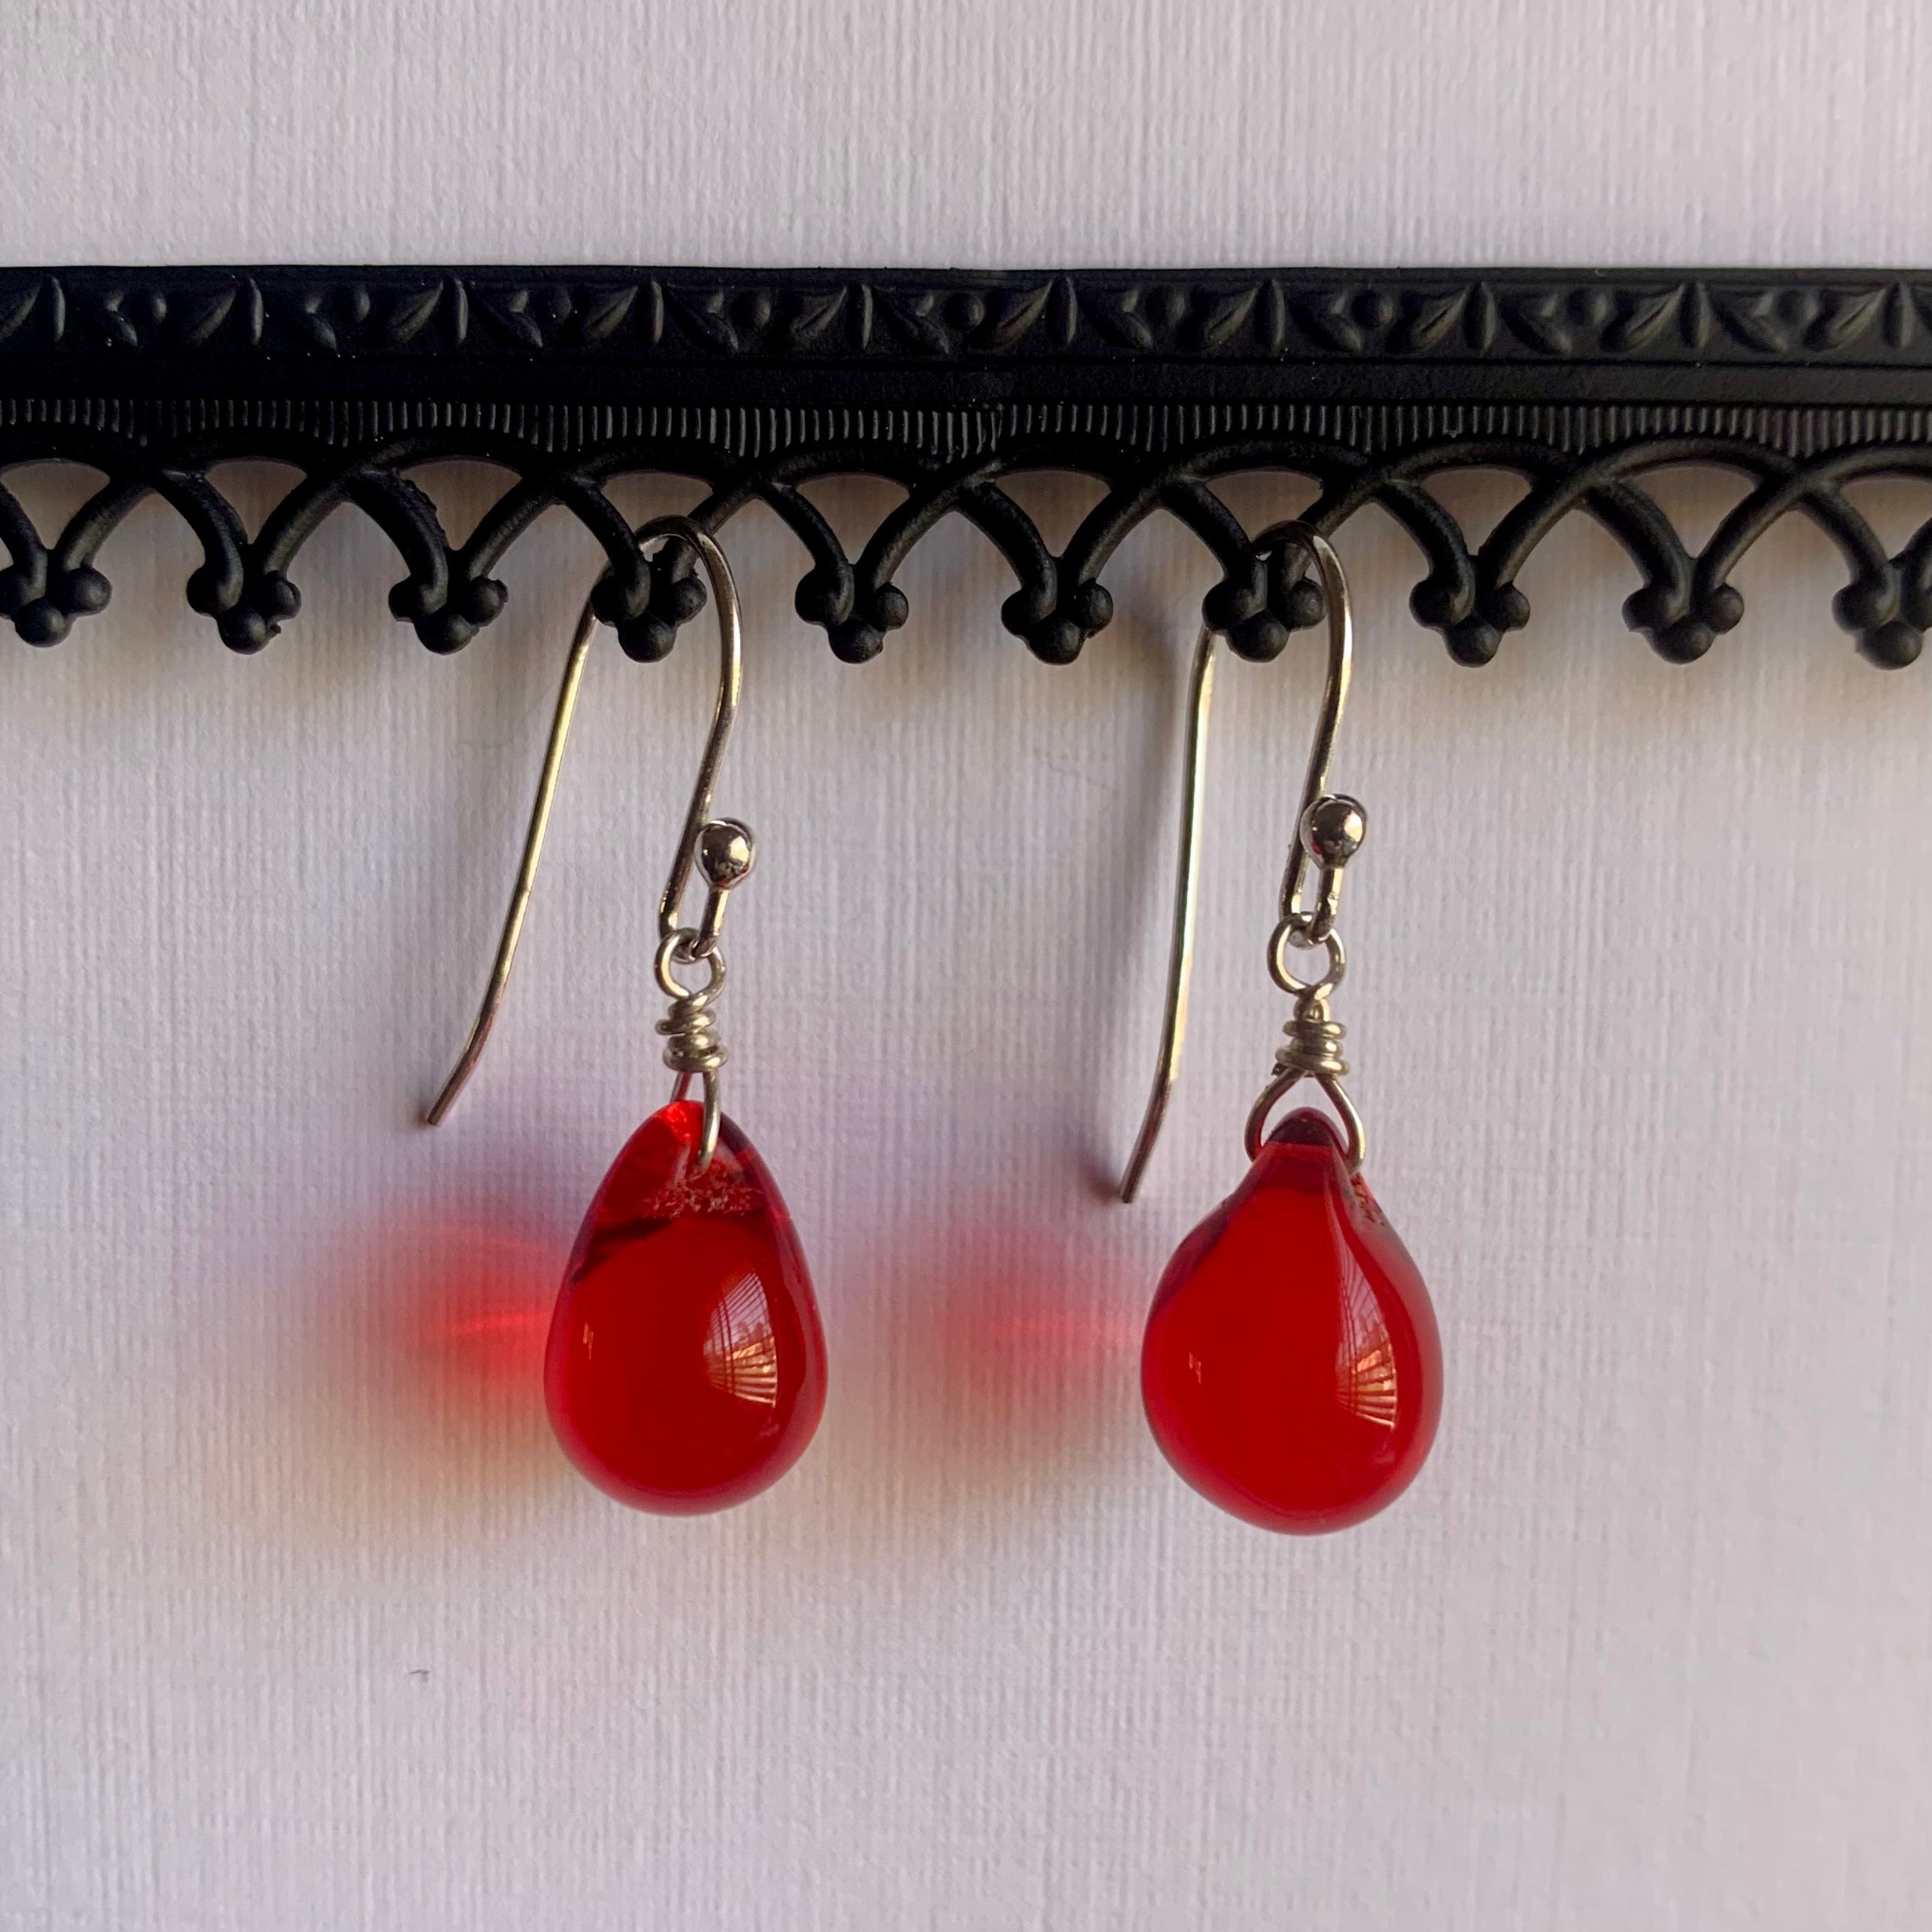 Red drop dangle earrings in sterling silver